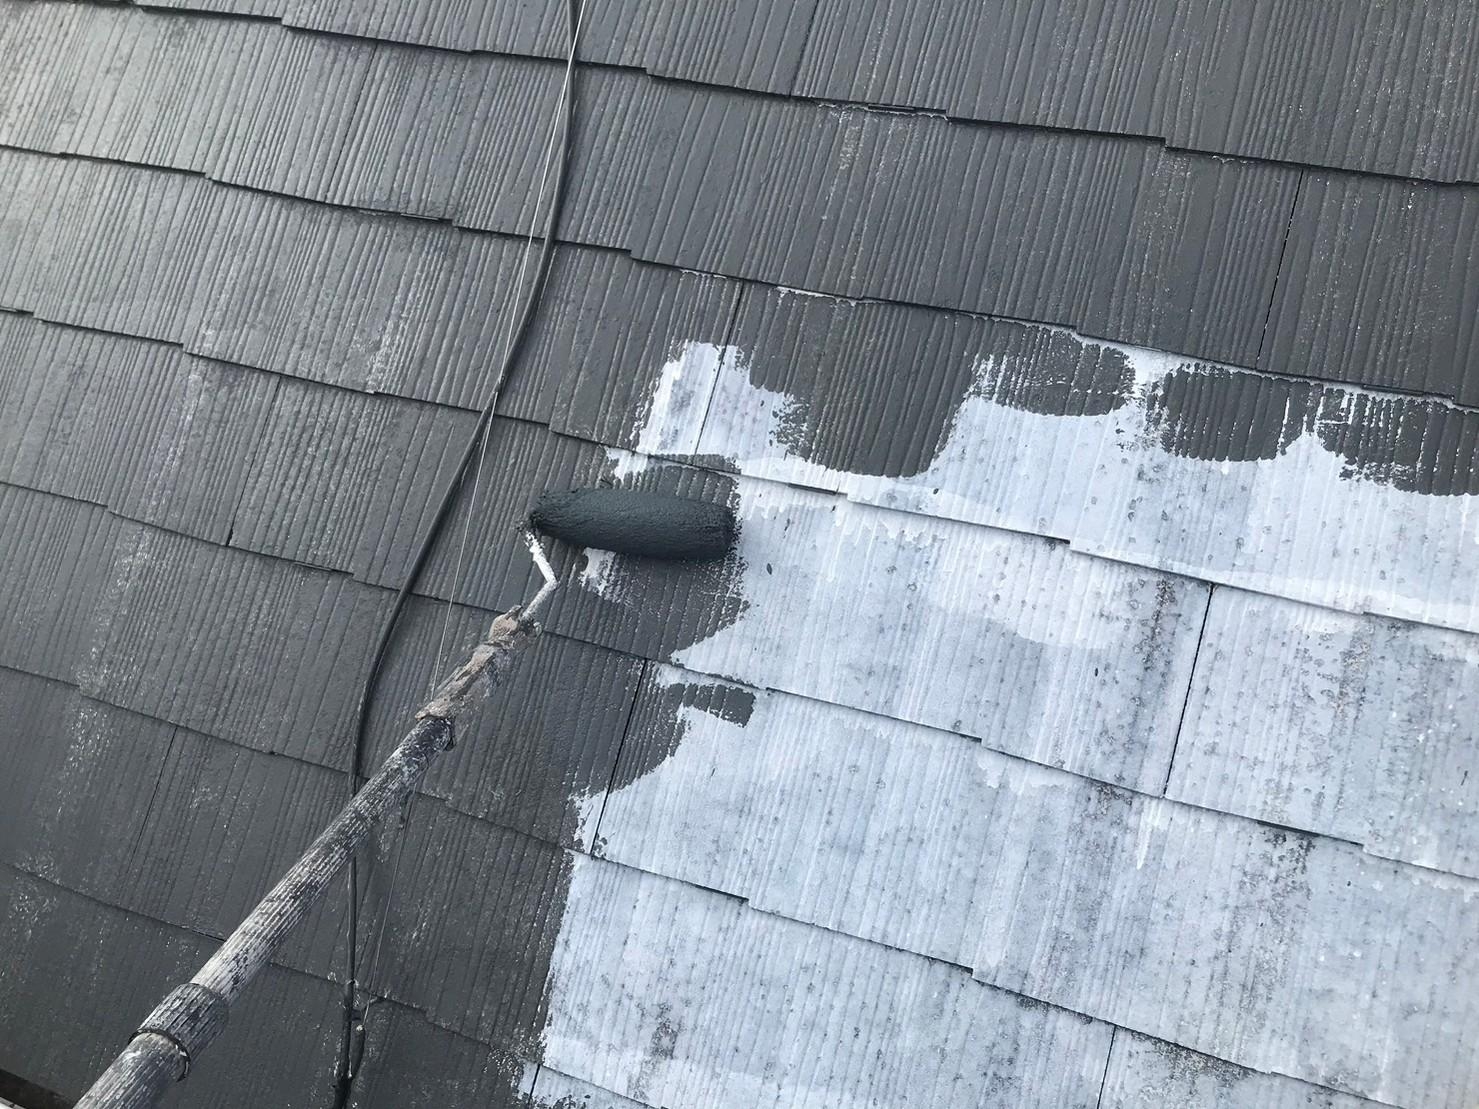 福岡県糟屋郡新宮町のK様邸で全体的に色あせてしまった屋根と外壁を弊社イチオシの塗料にて塗り替えました。8/4完成です。【ホームページより】